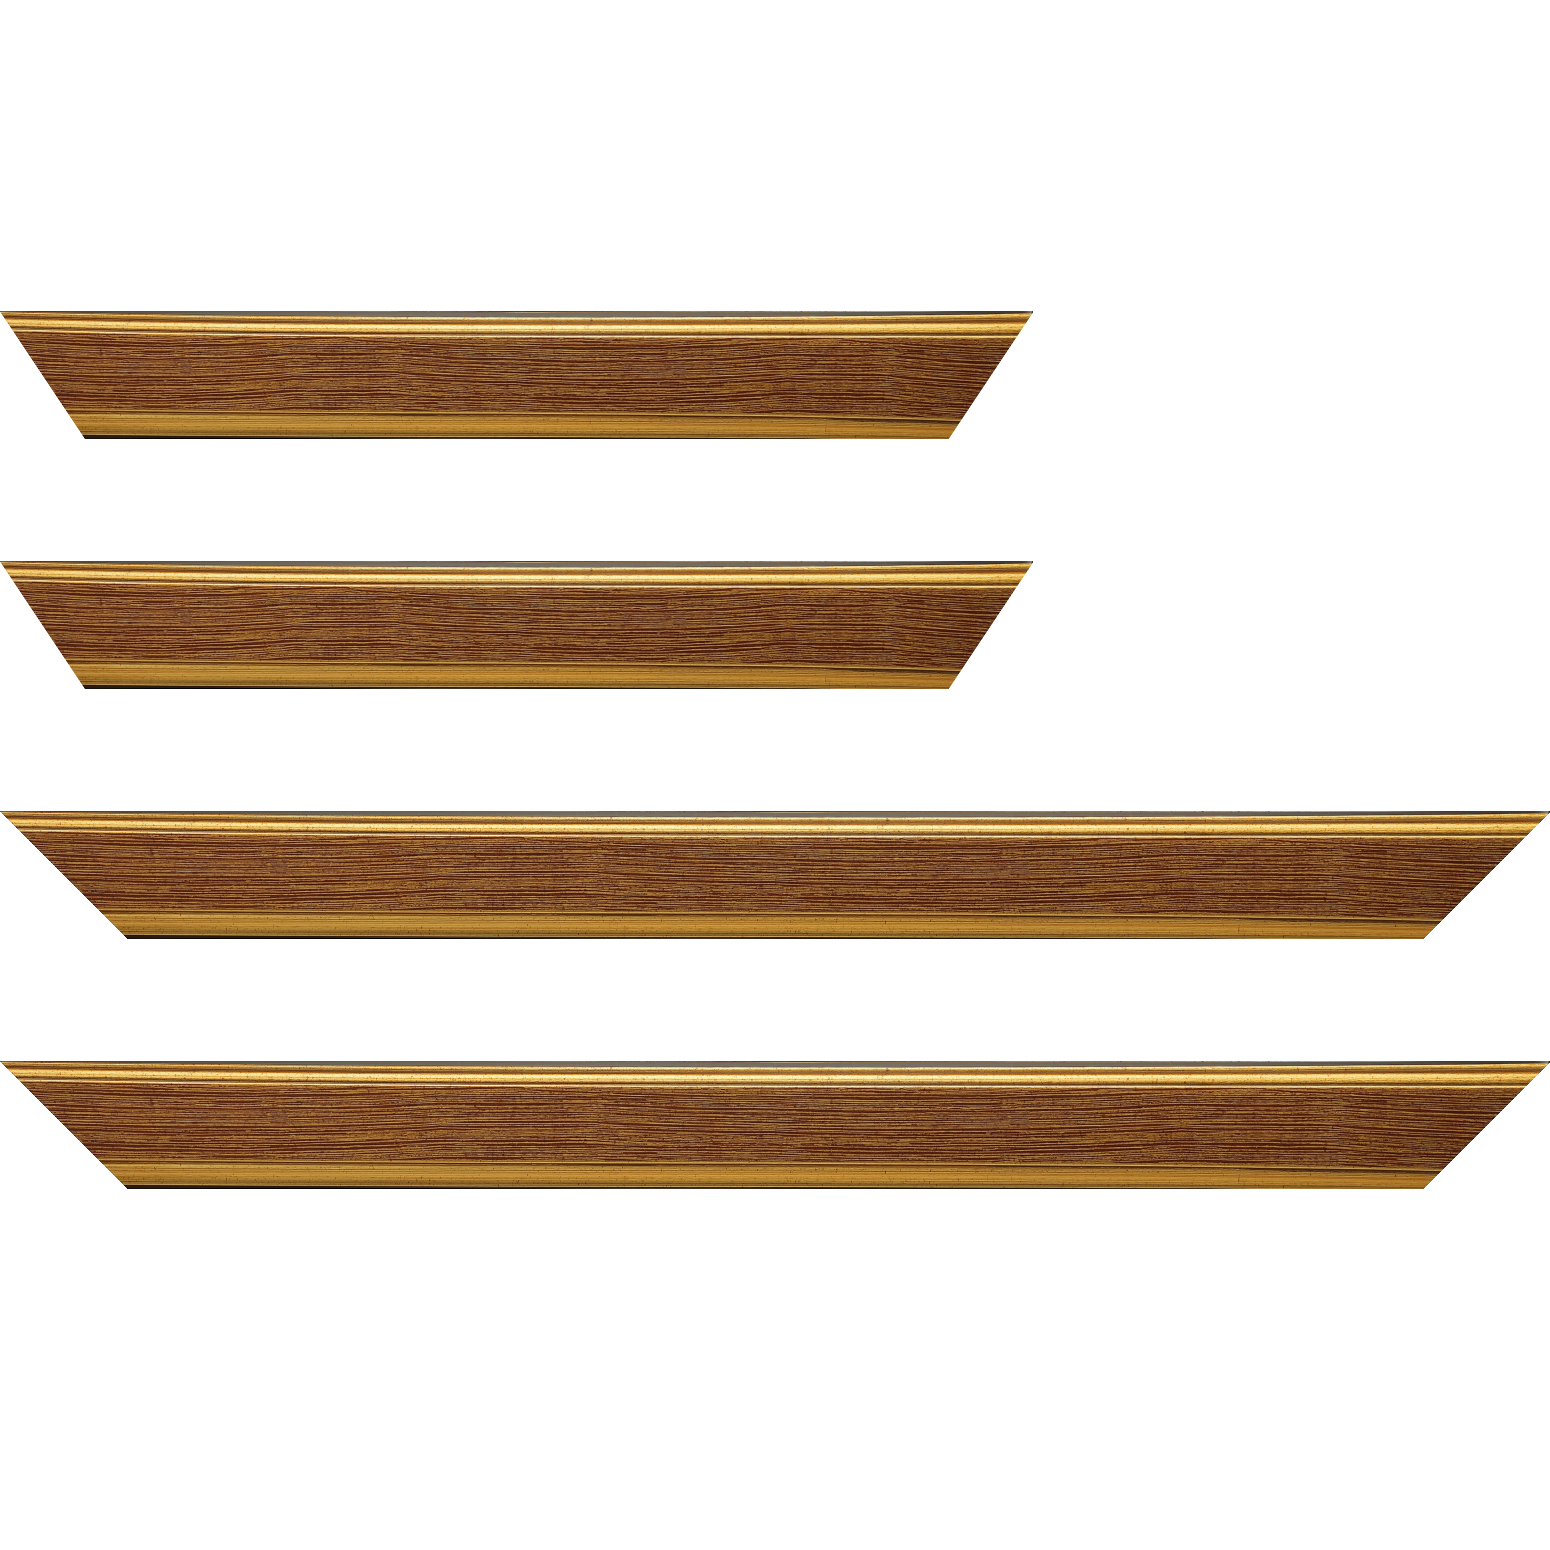 Baguette bois profil plat largeur 3.5cm couleur or fond bordeaux filet or - 18x24